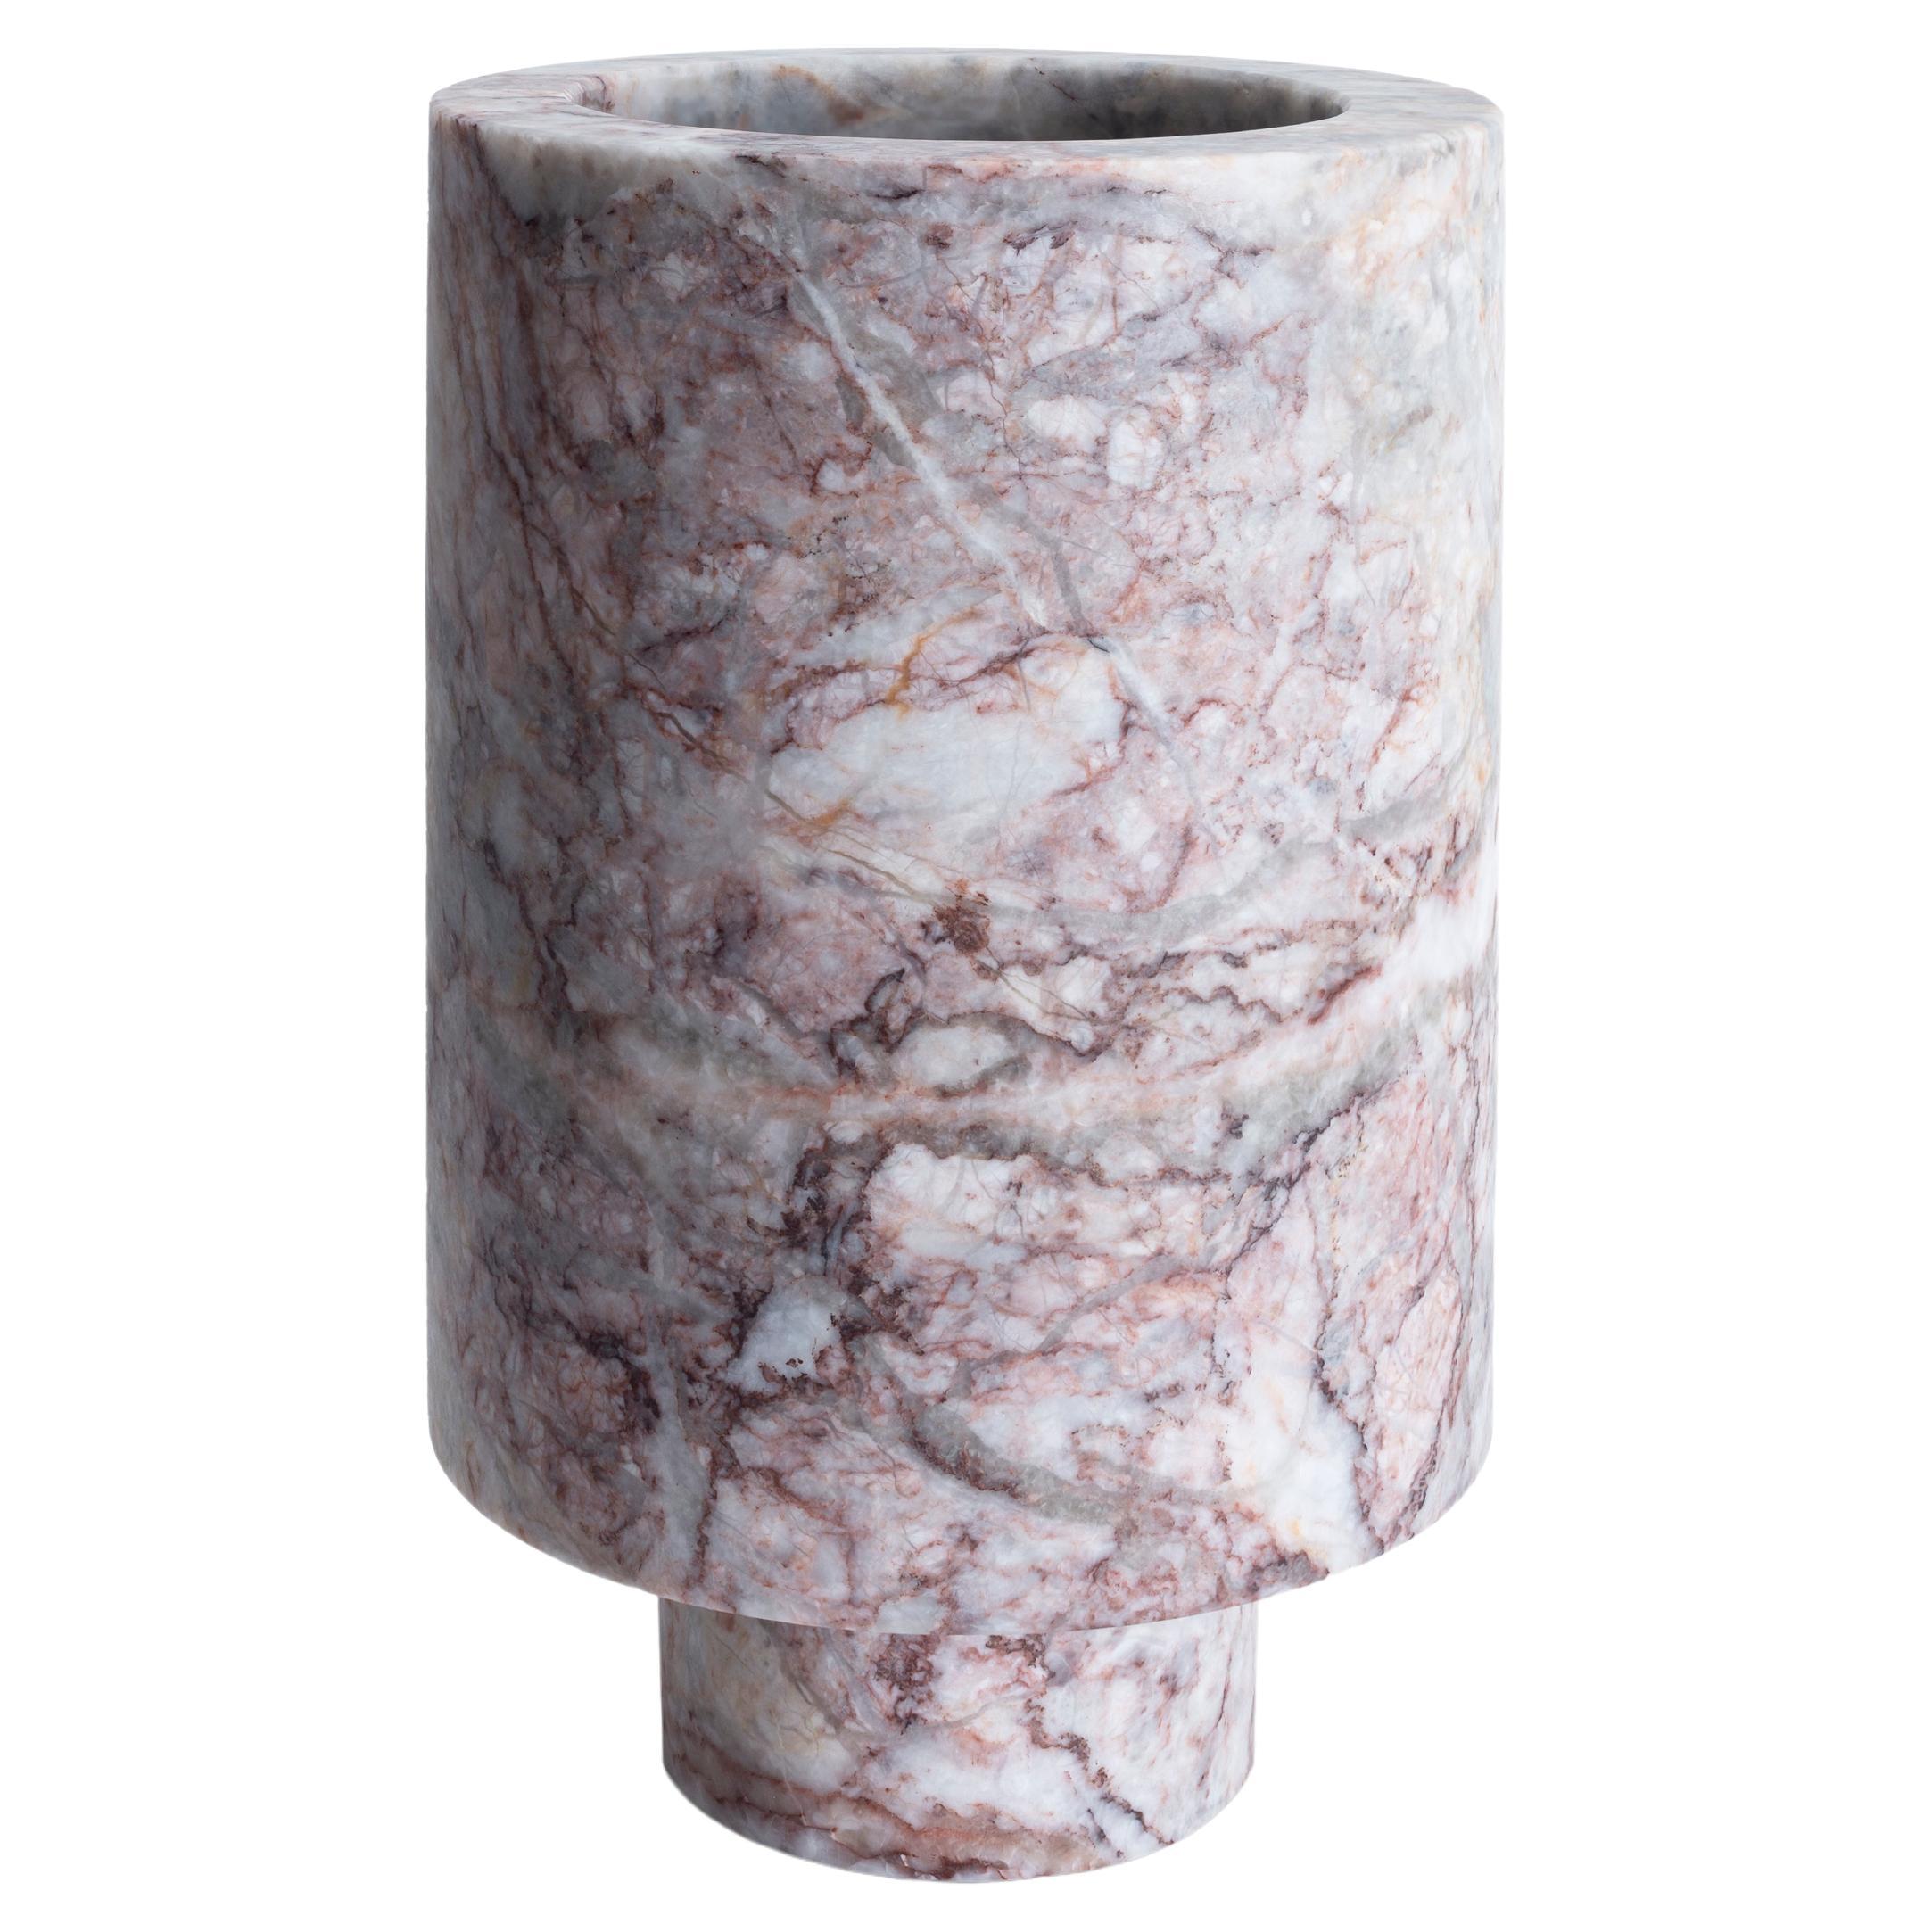 New Modern Flower Vase in Marble, Creator Karen Chekerdjian, stock